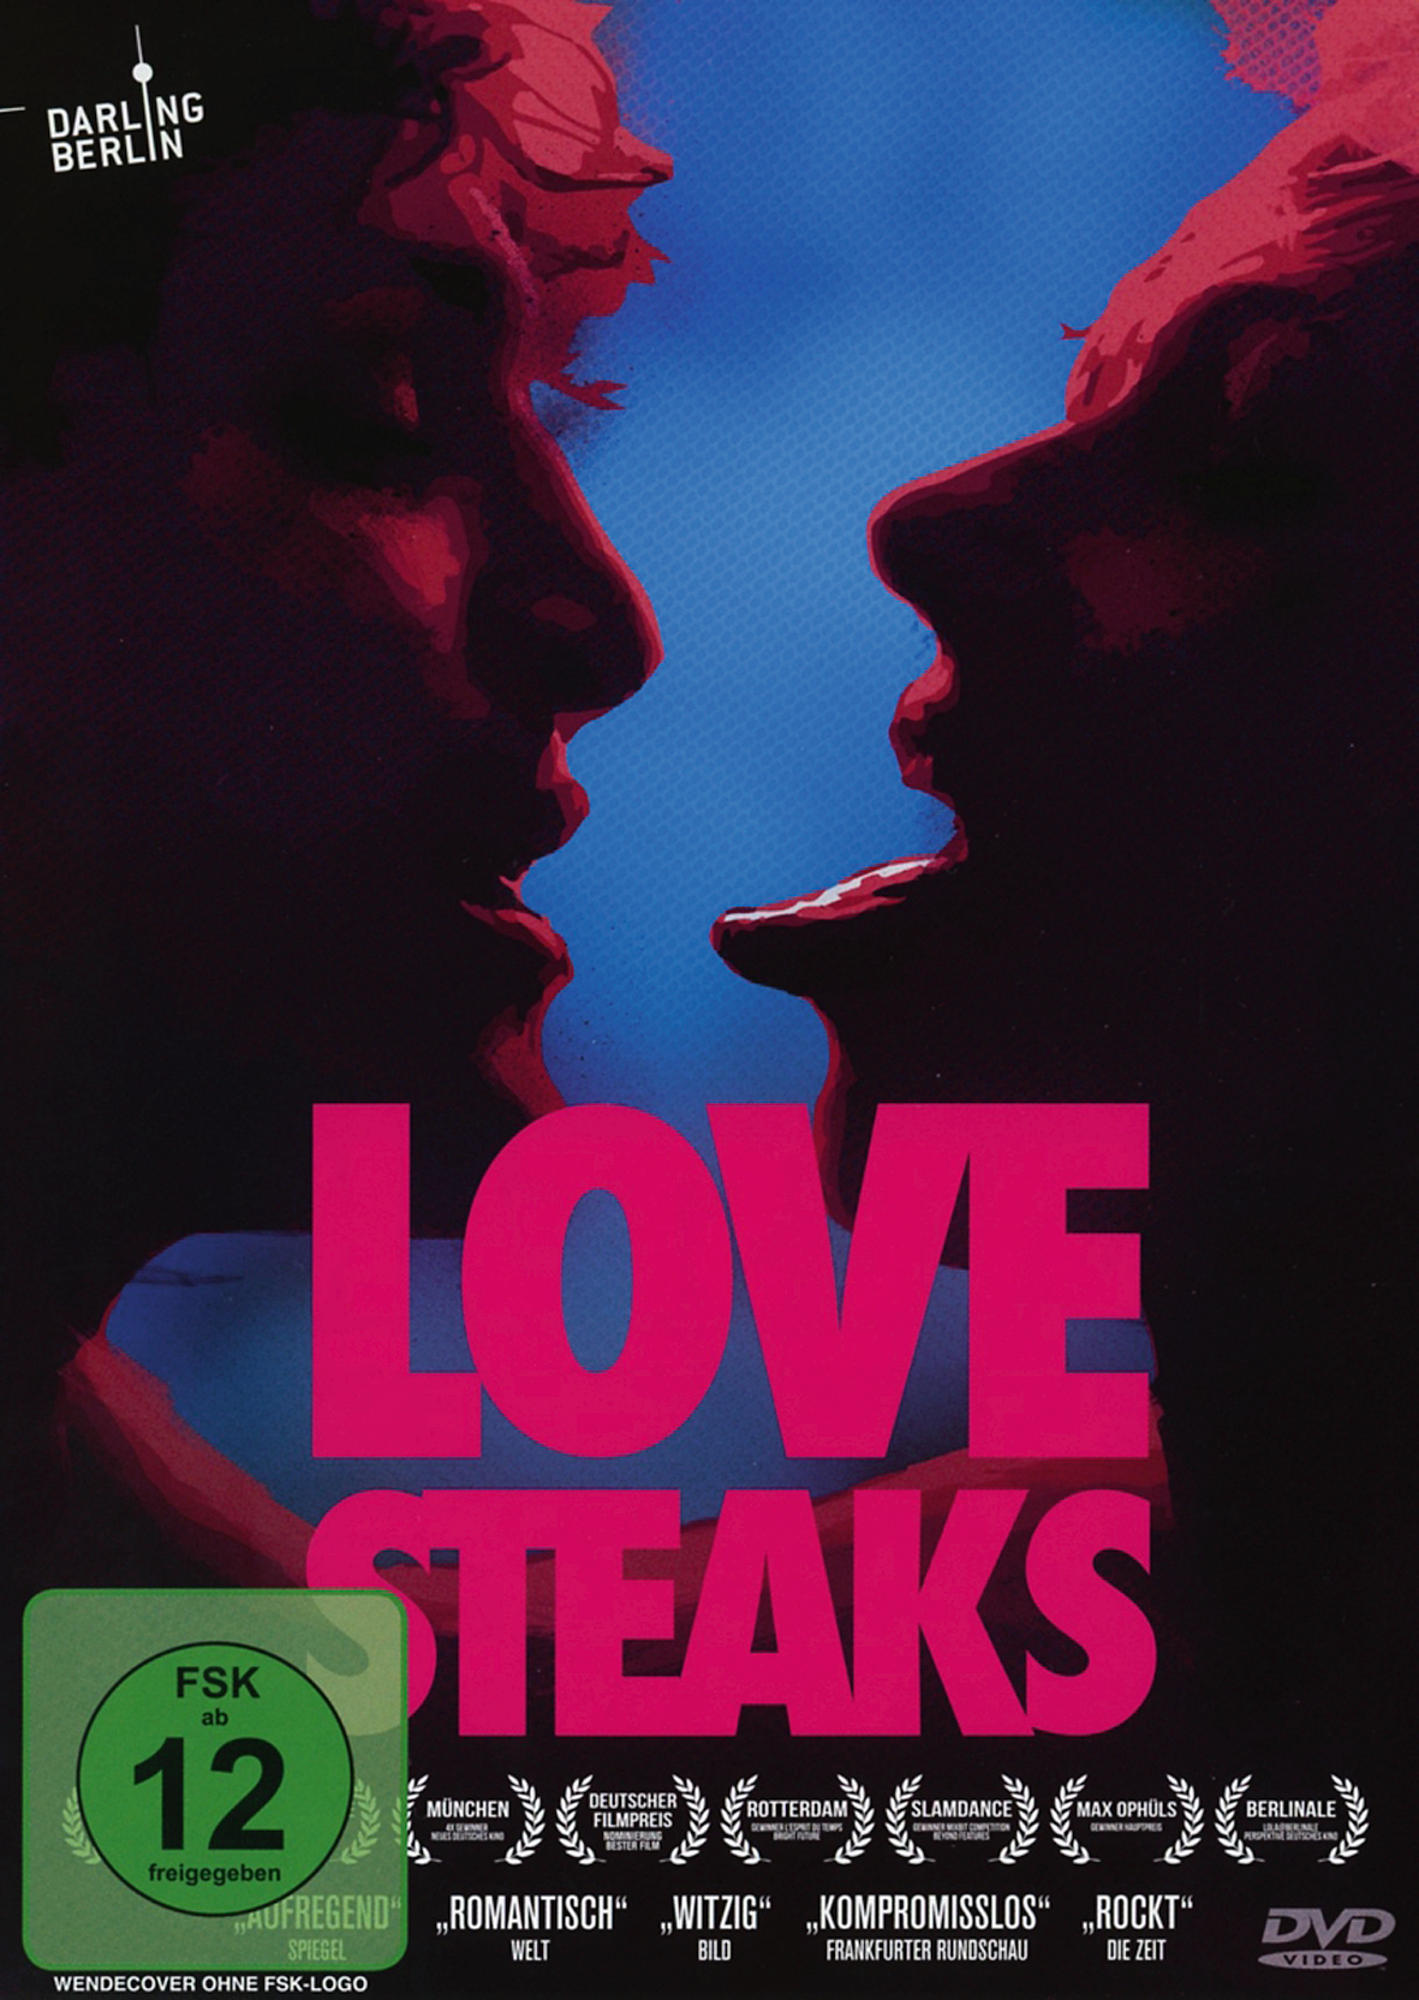 DVD STEAKS LOVE